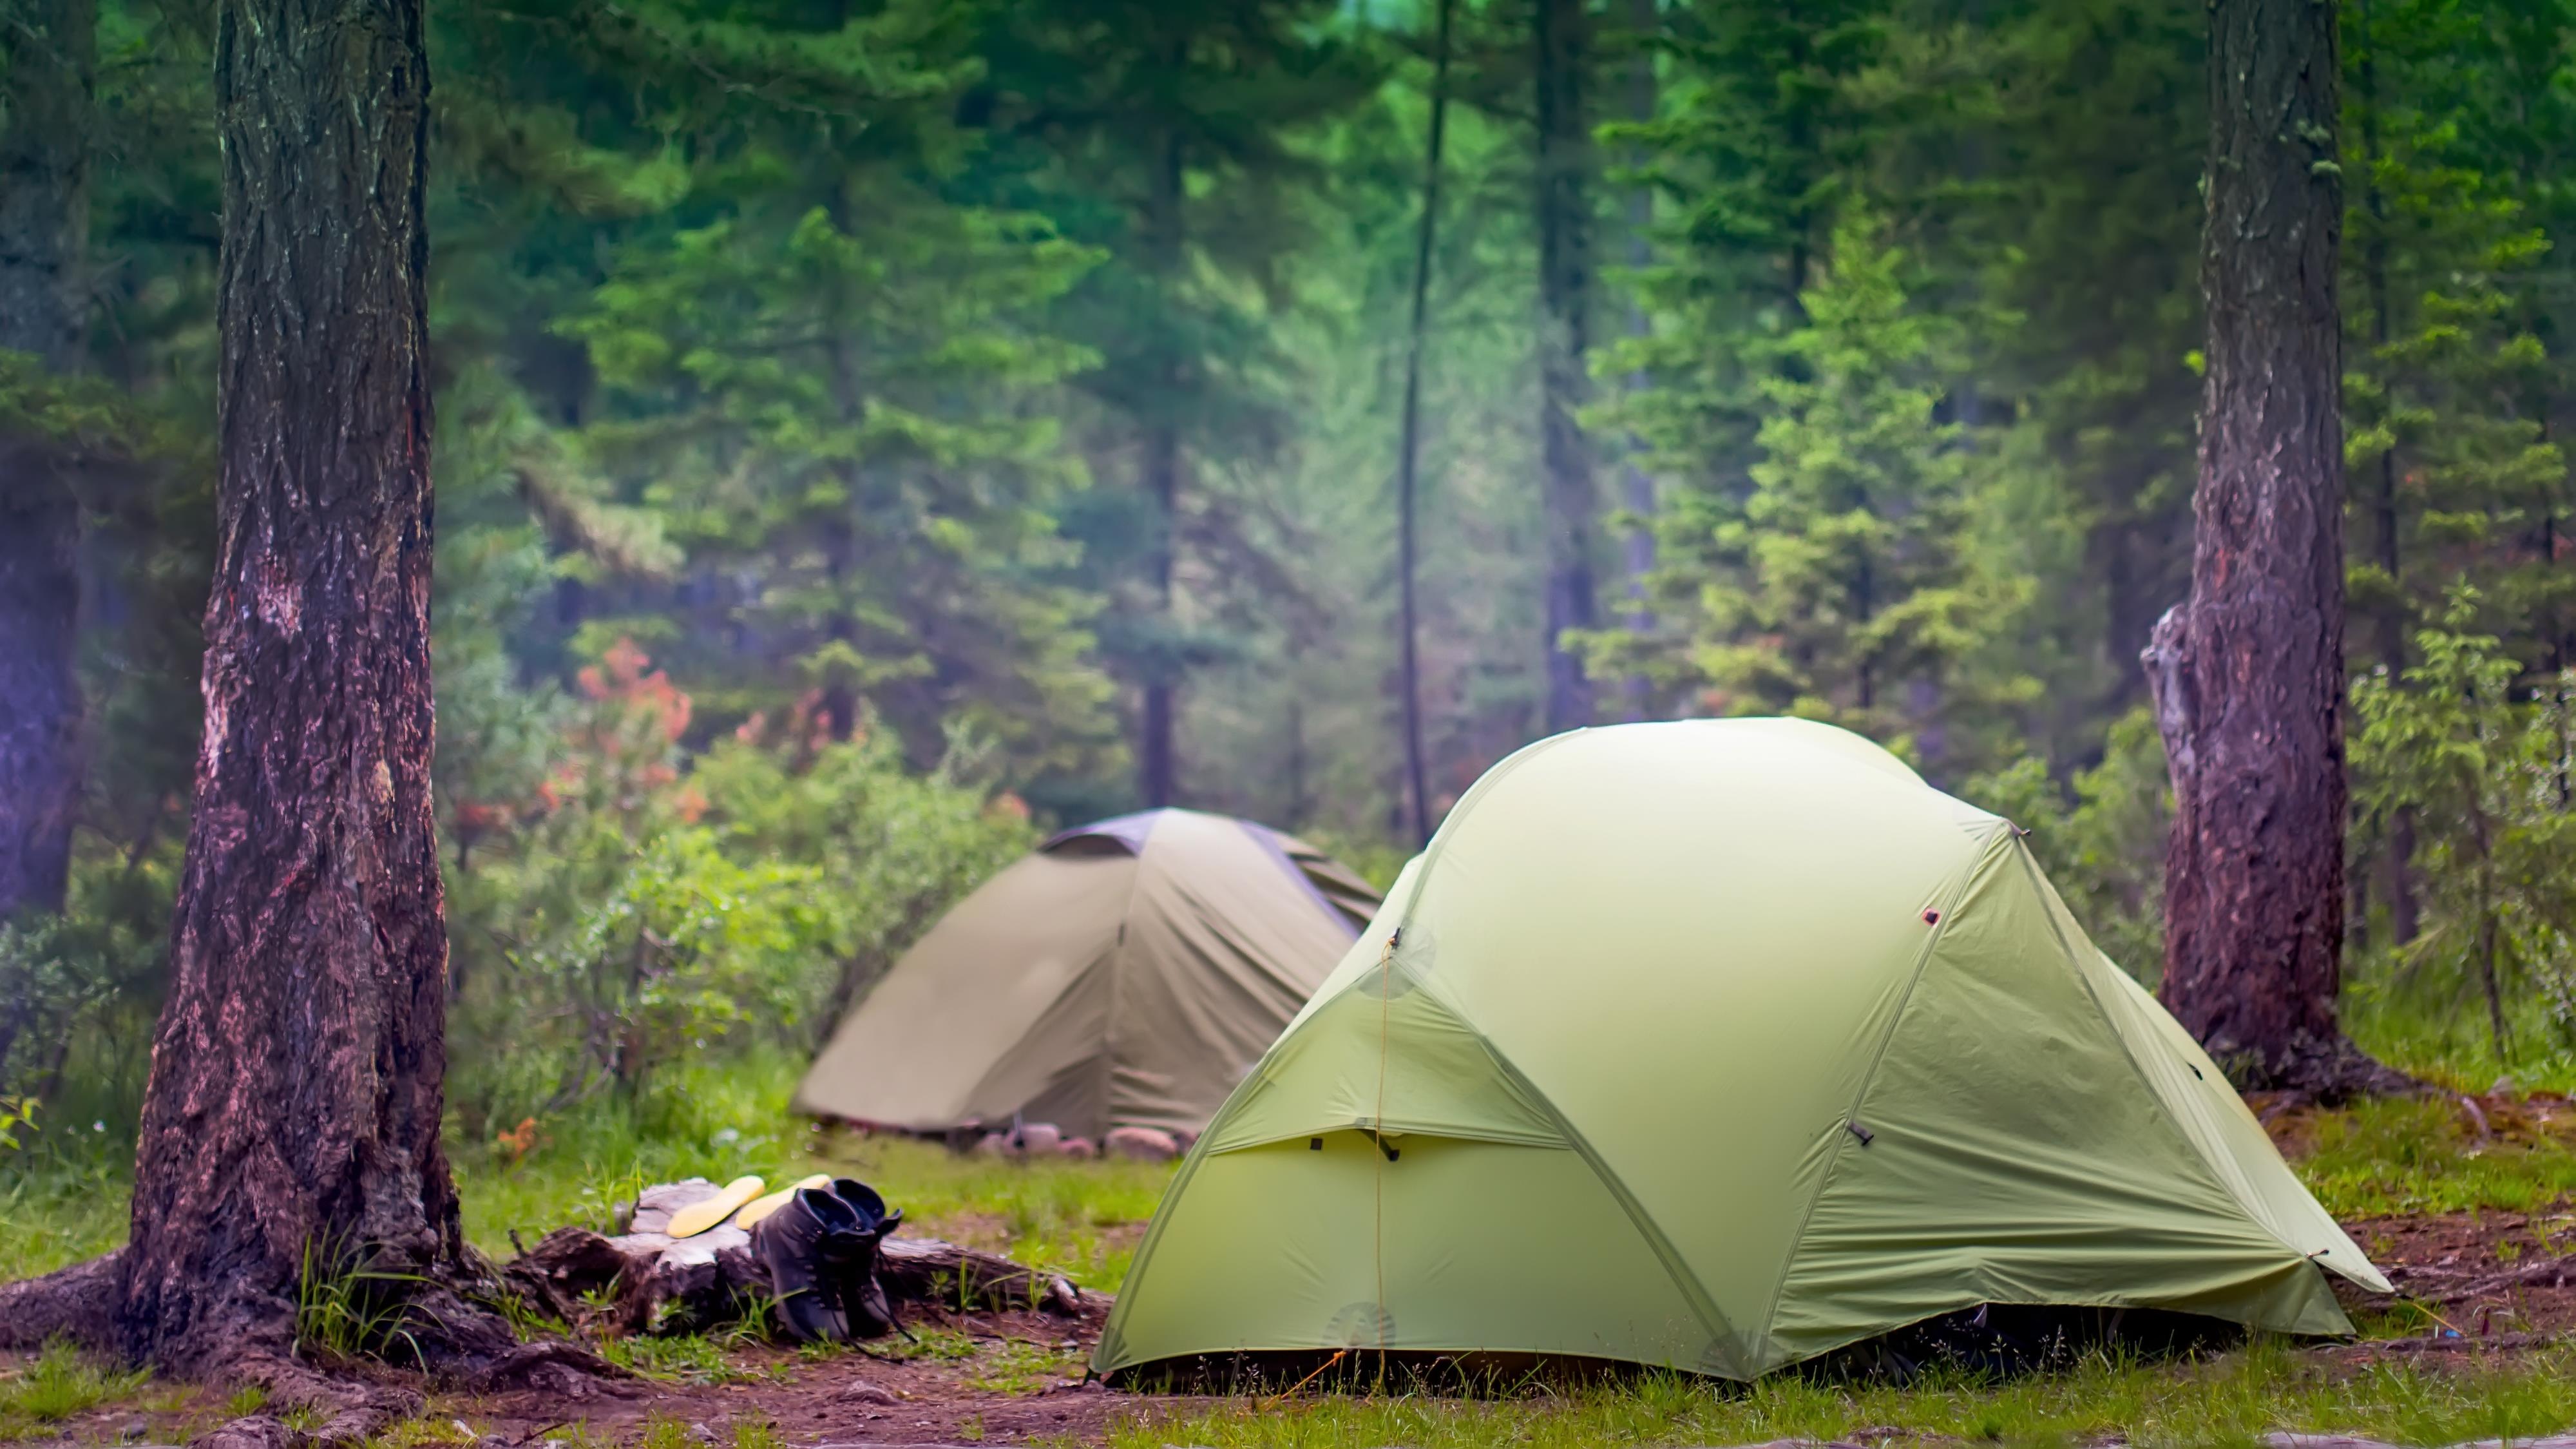 le camping dans la nature - okgo.net